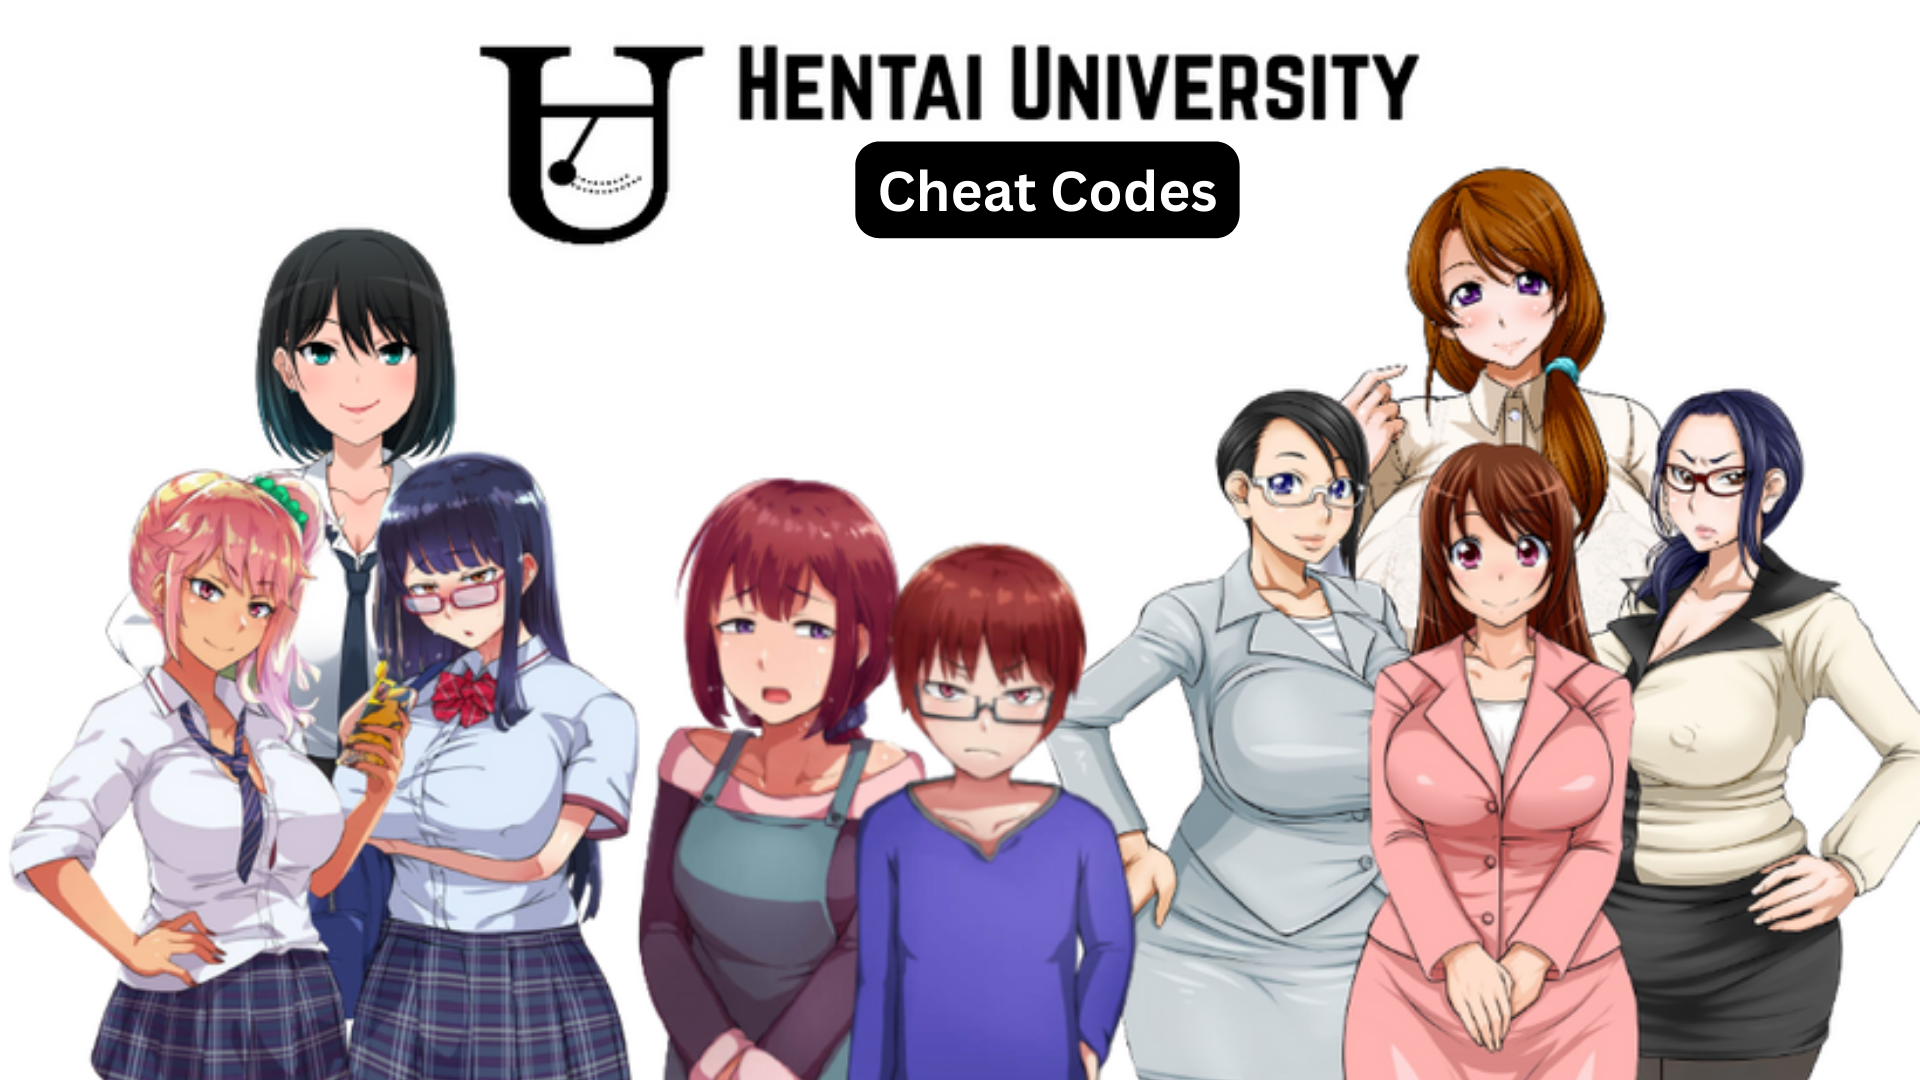 hentai university cheat codes